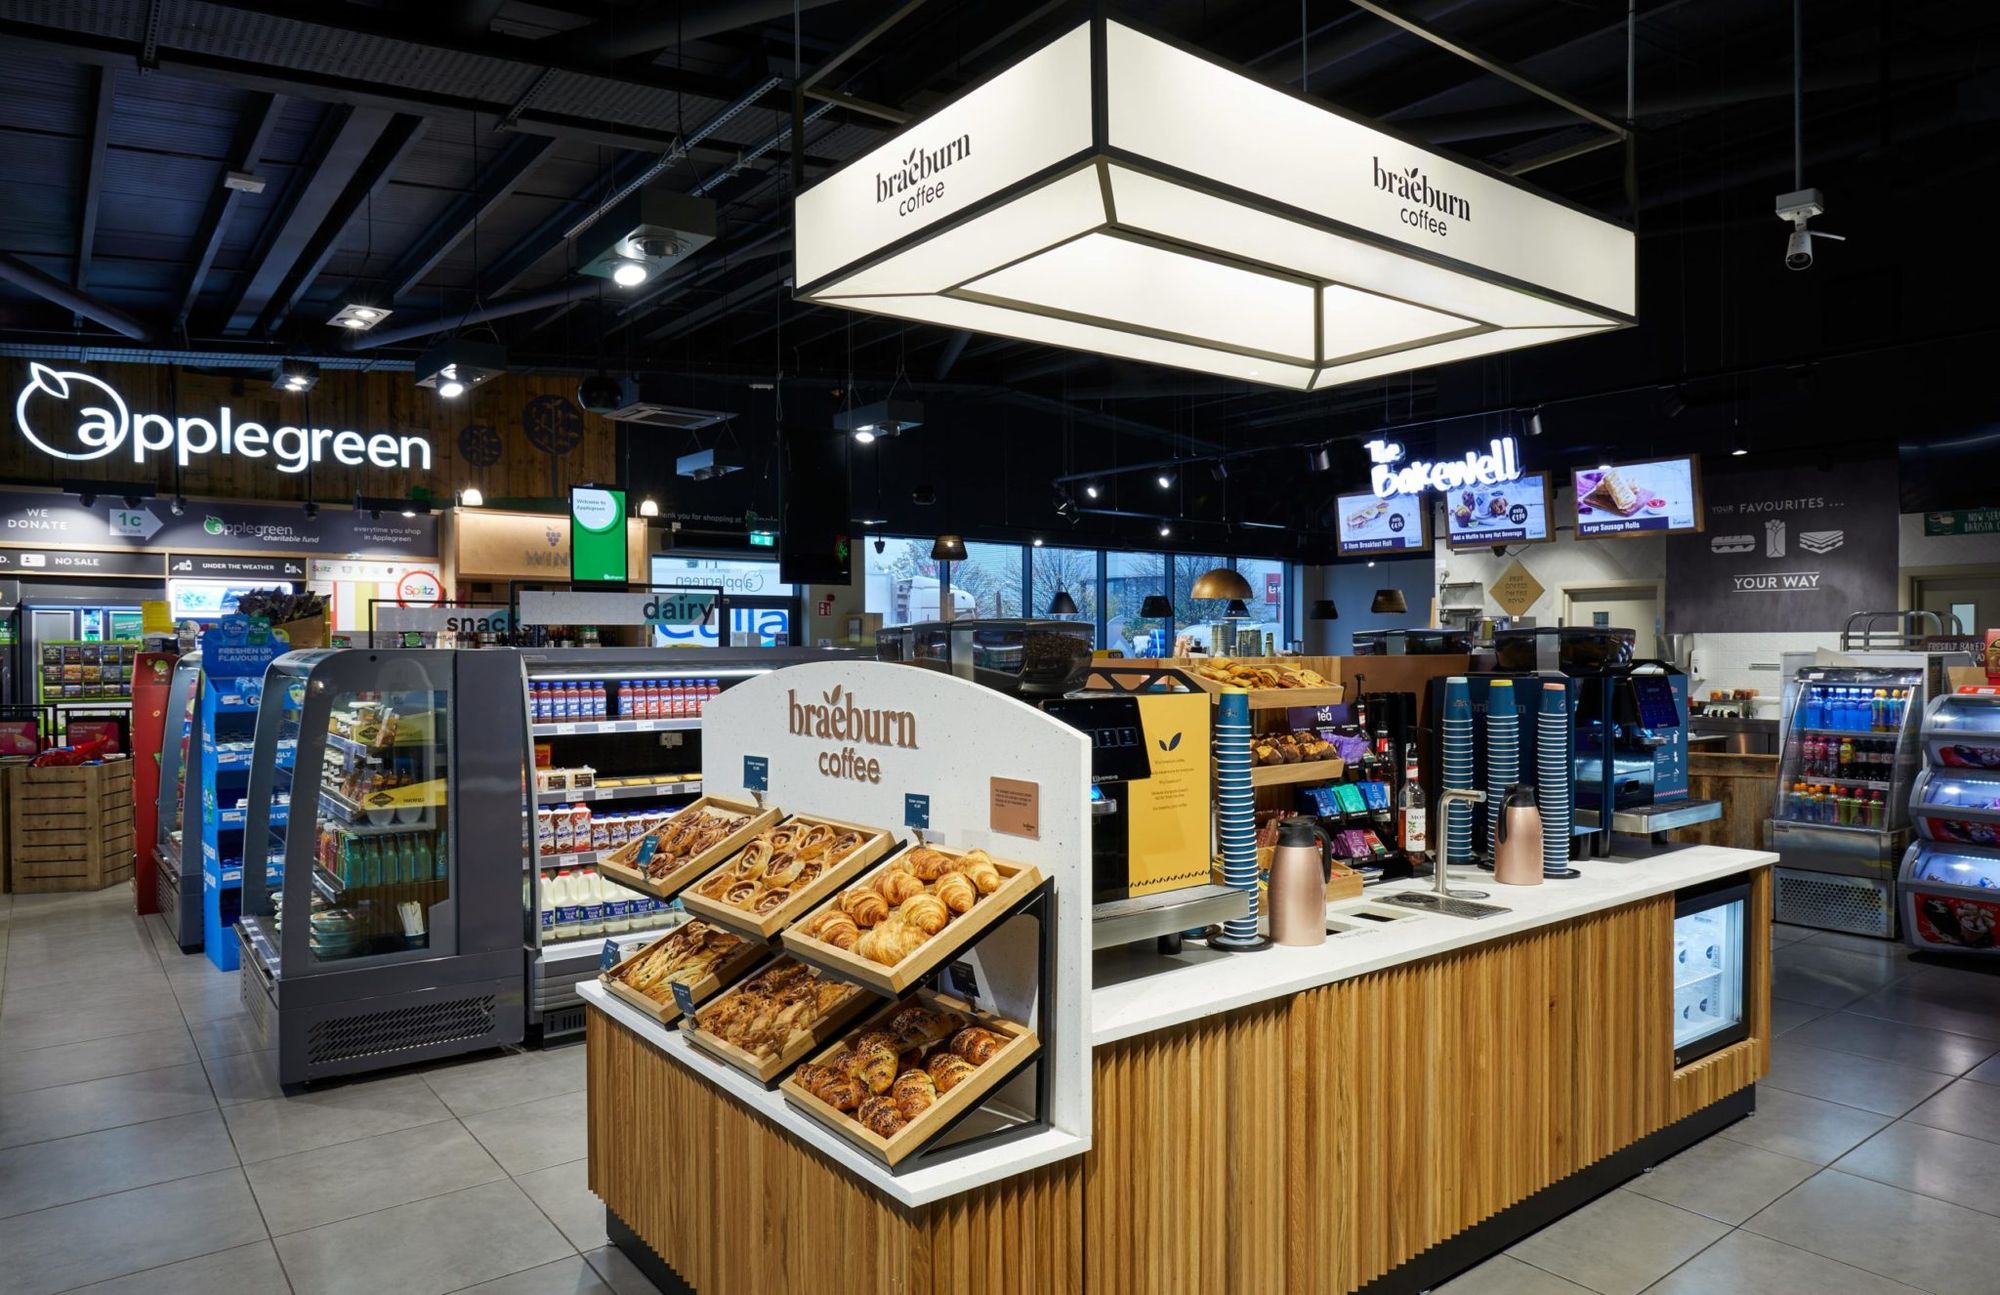 Придорожный ритейлер Applegreen в Ирландии запускает на своих АЗС премиальный кофейный бренд braeburn Coffee